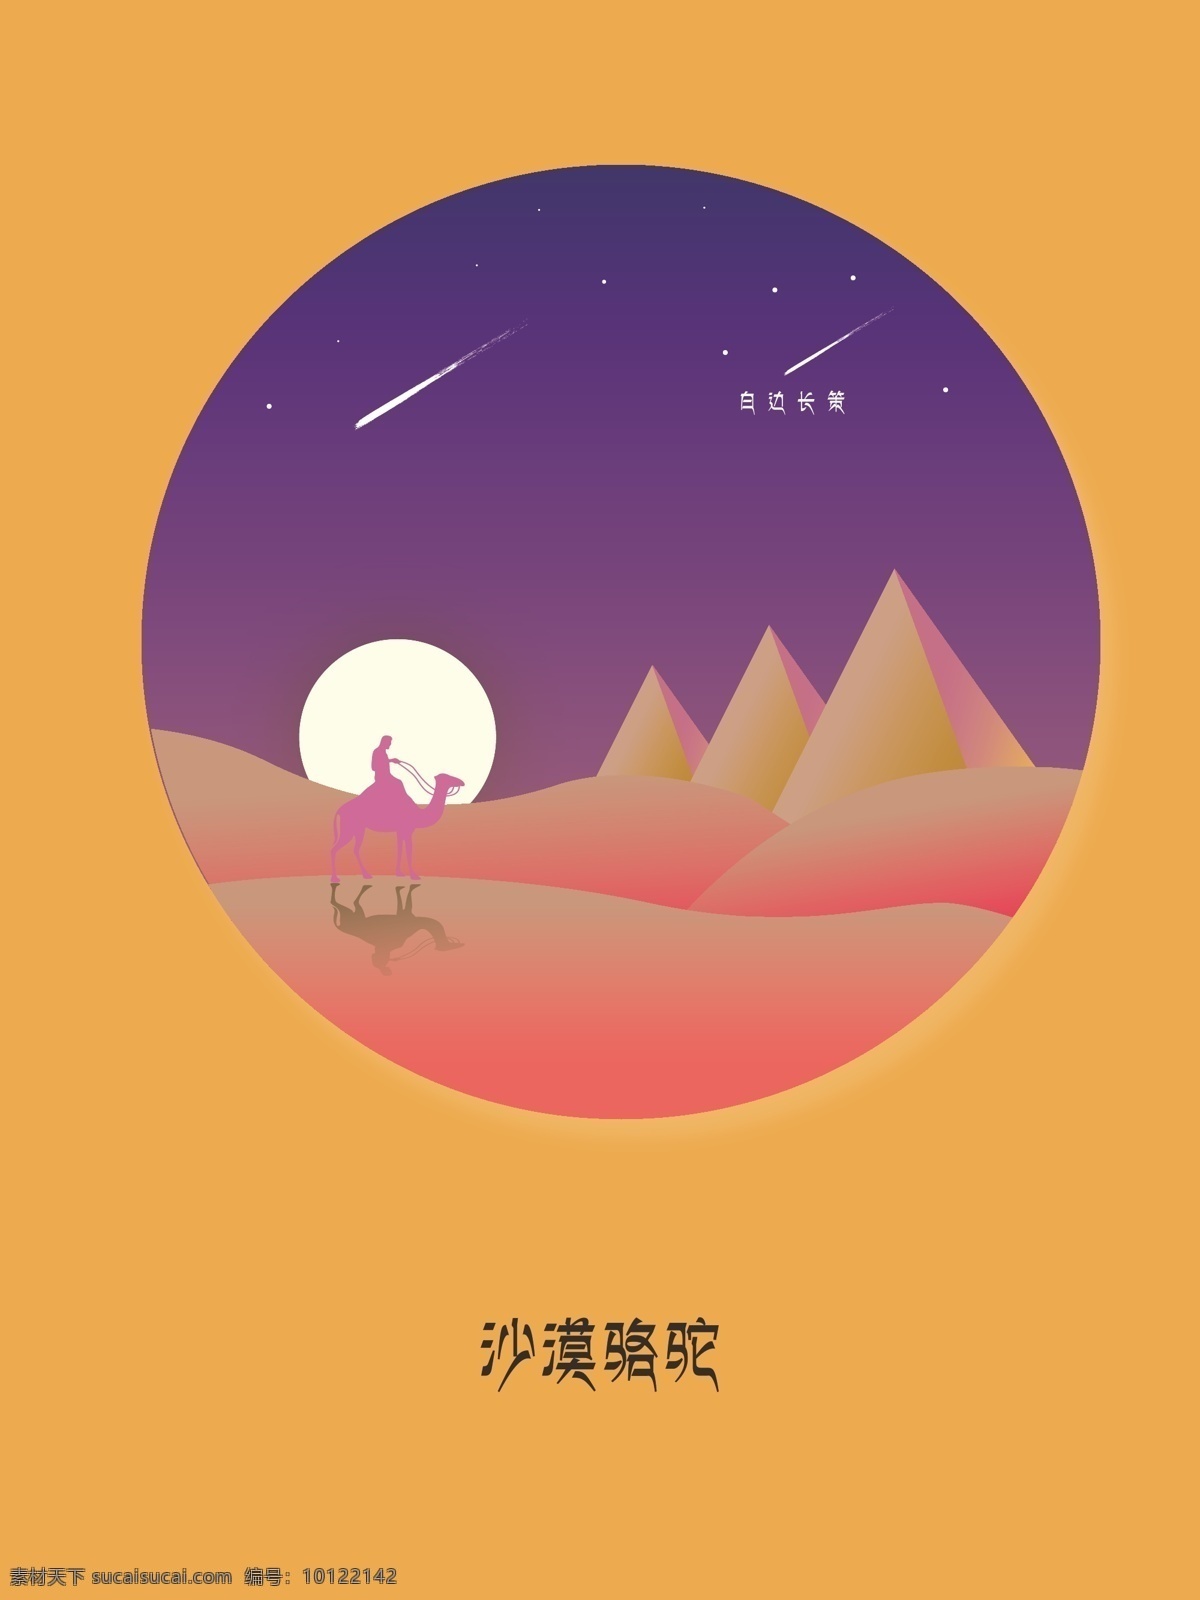 沙漠骆驼 骆驼 沙漠 月亮 星星 海报 插画